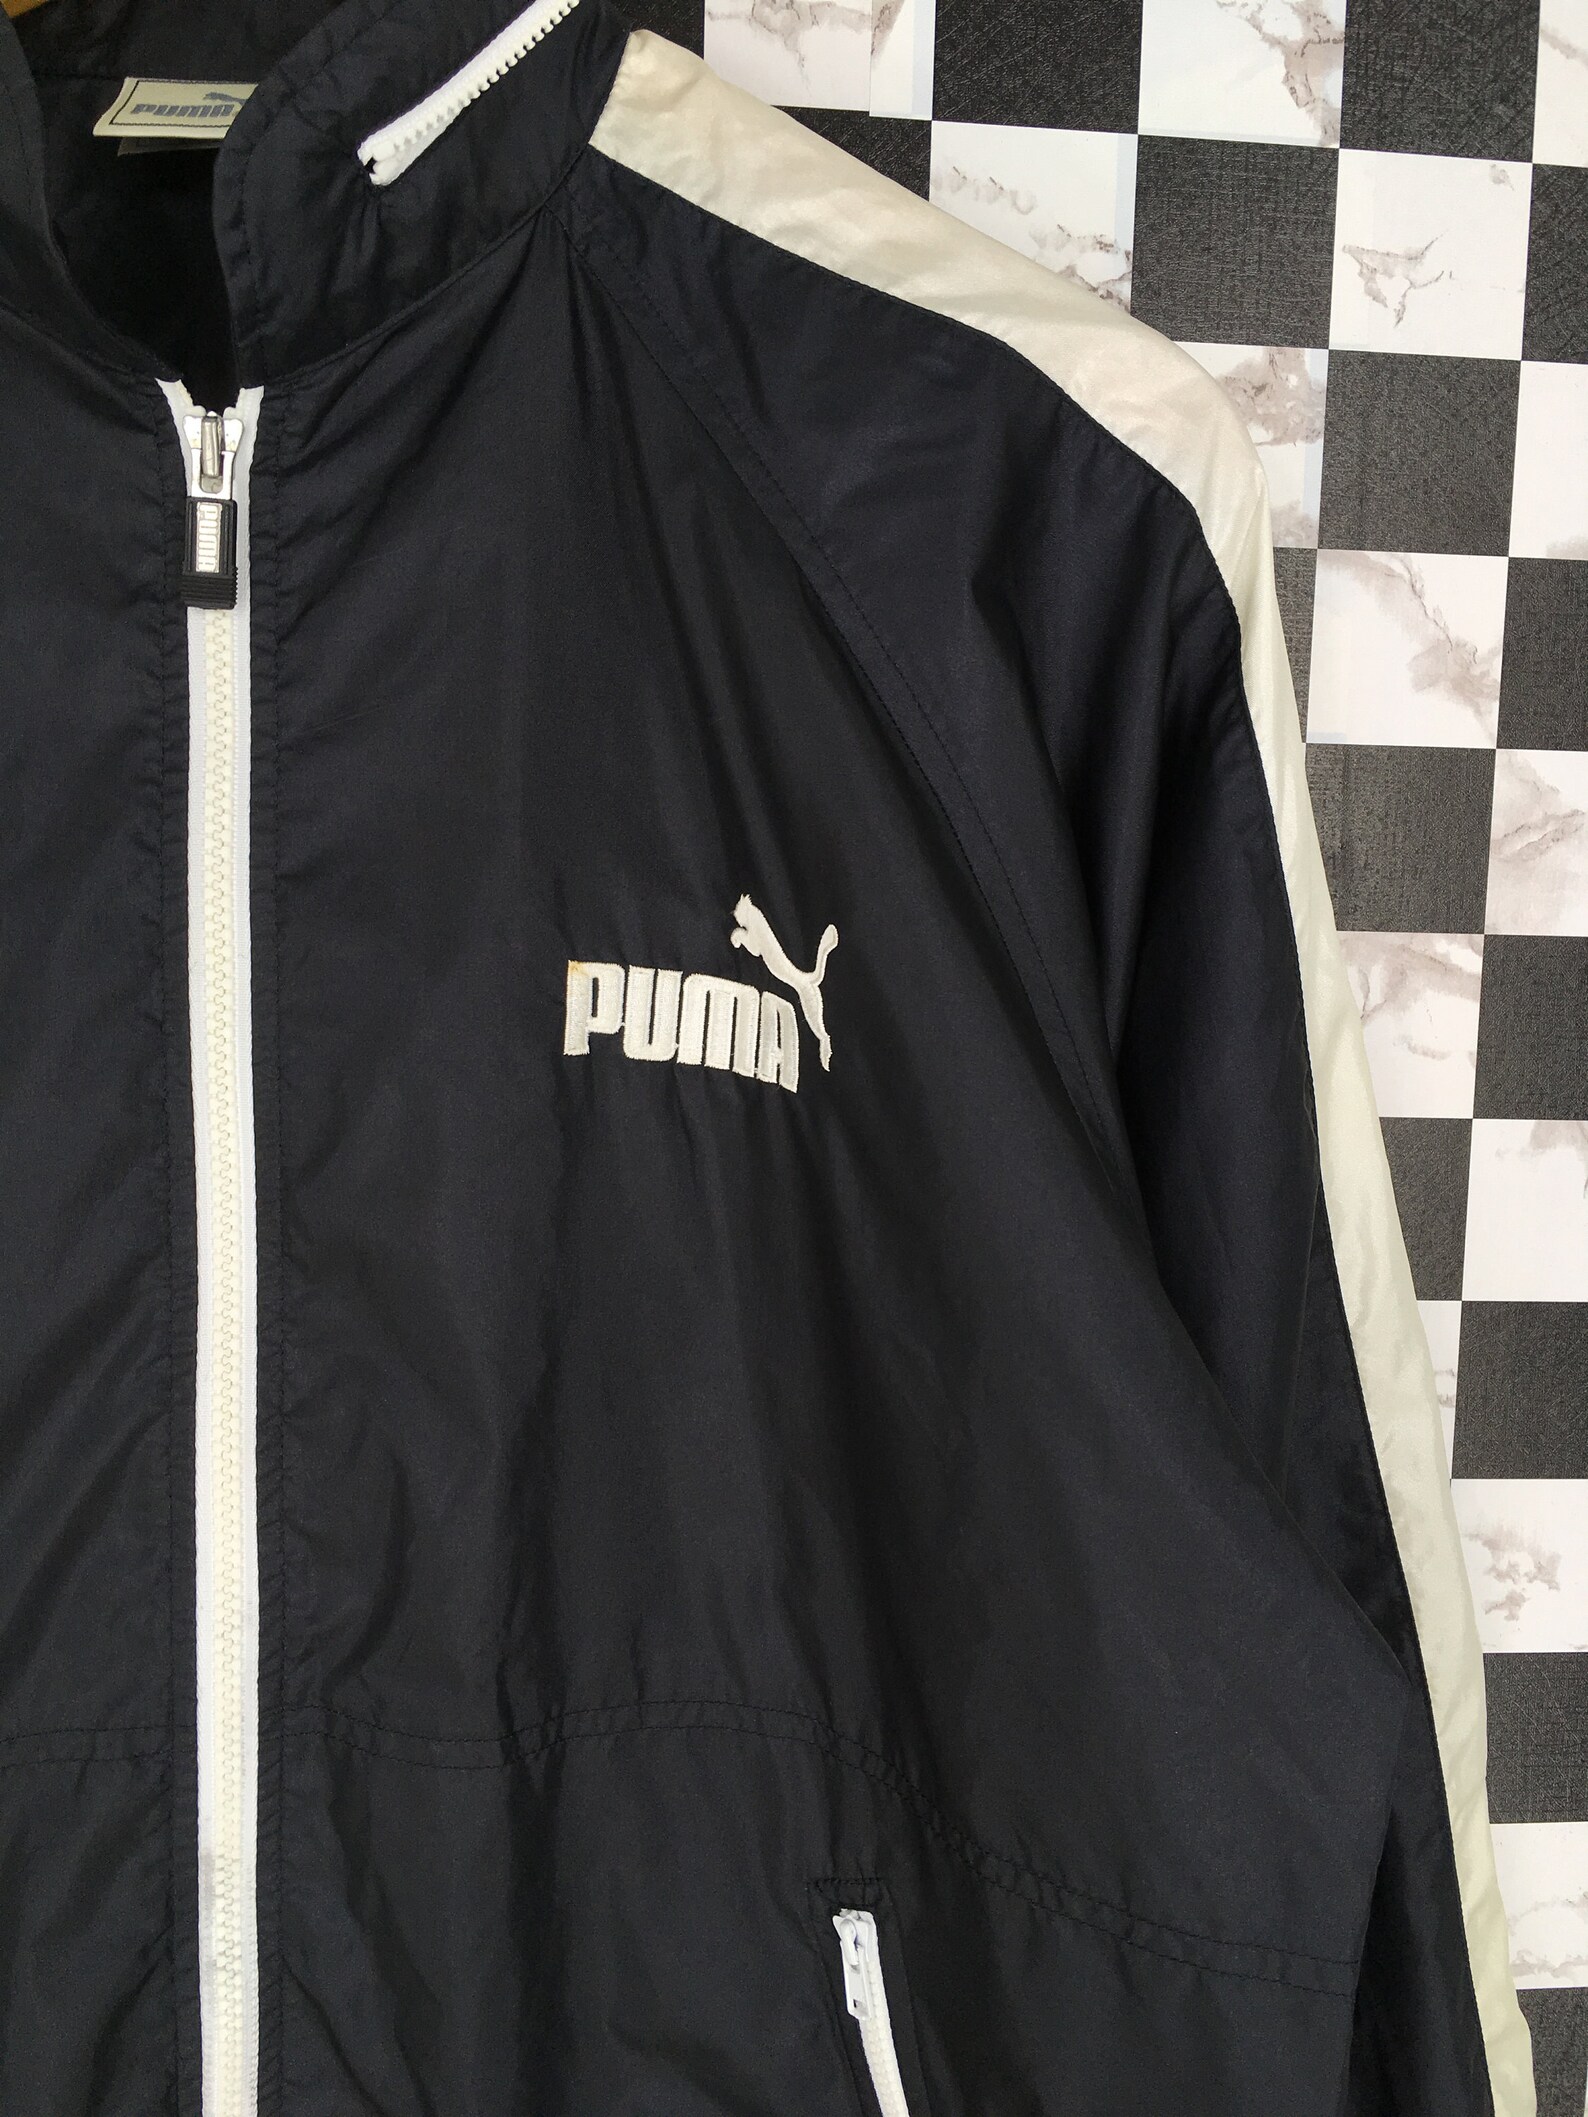 Vintage 90s Puma Windrunner Hoodie Medium Black Vintage | Etsy